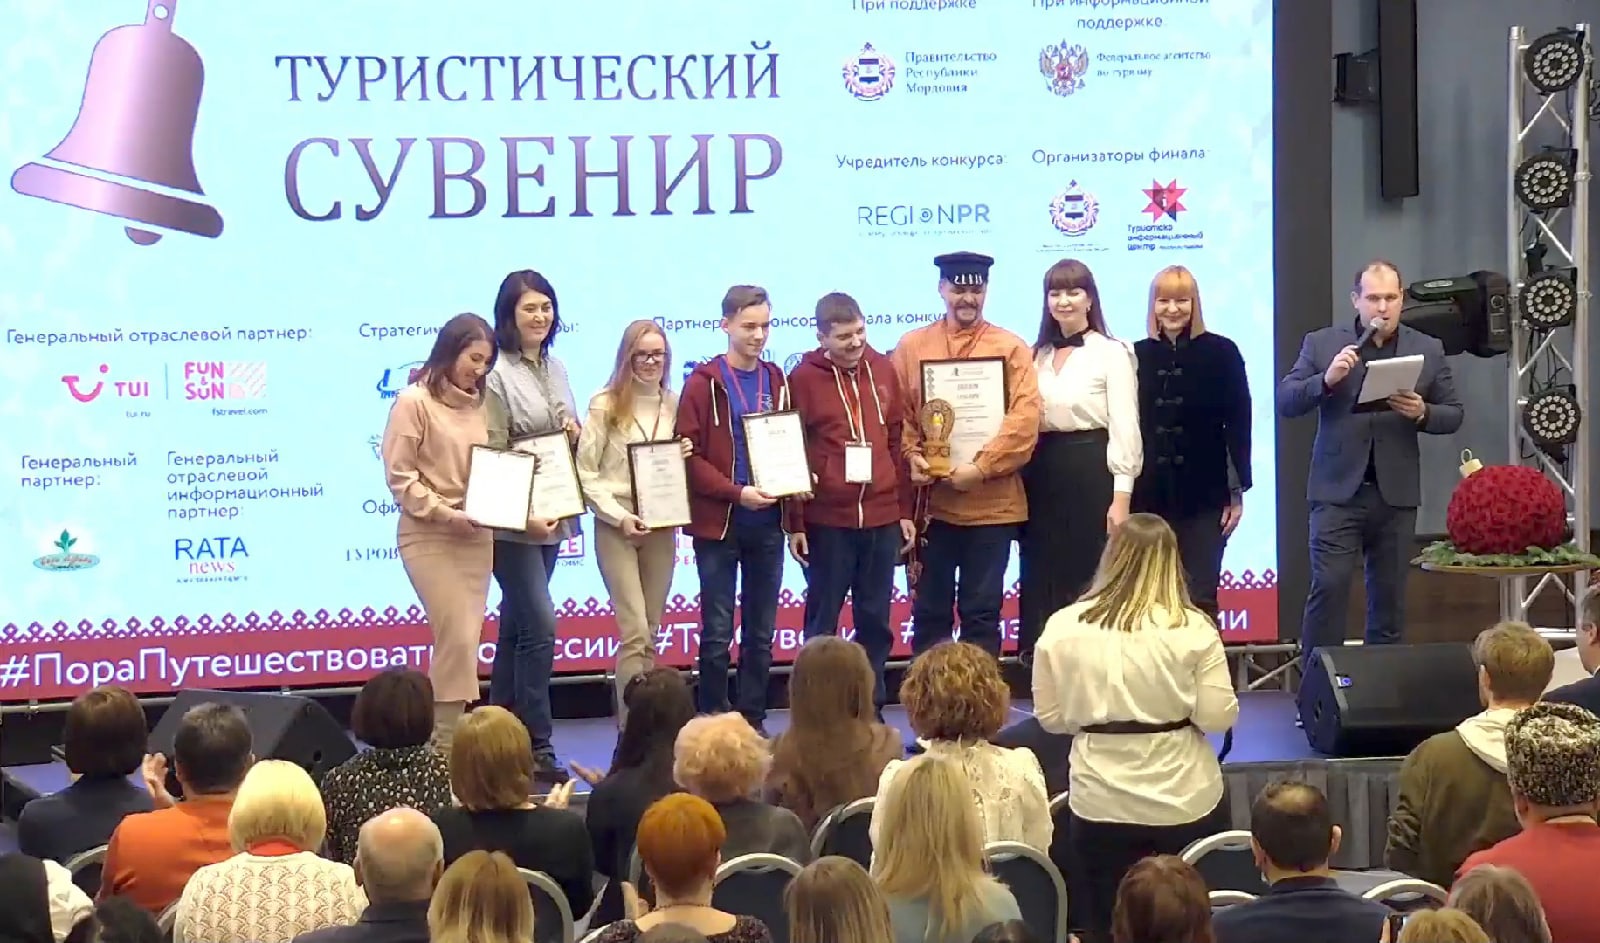 Ивановцев наградили на всероссийском конкурсе «Туристический сувенир»